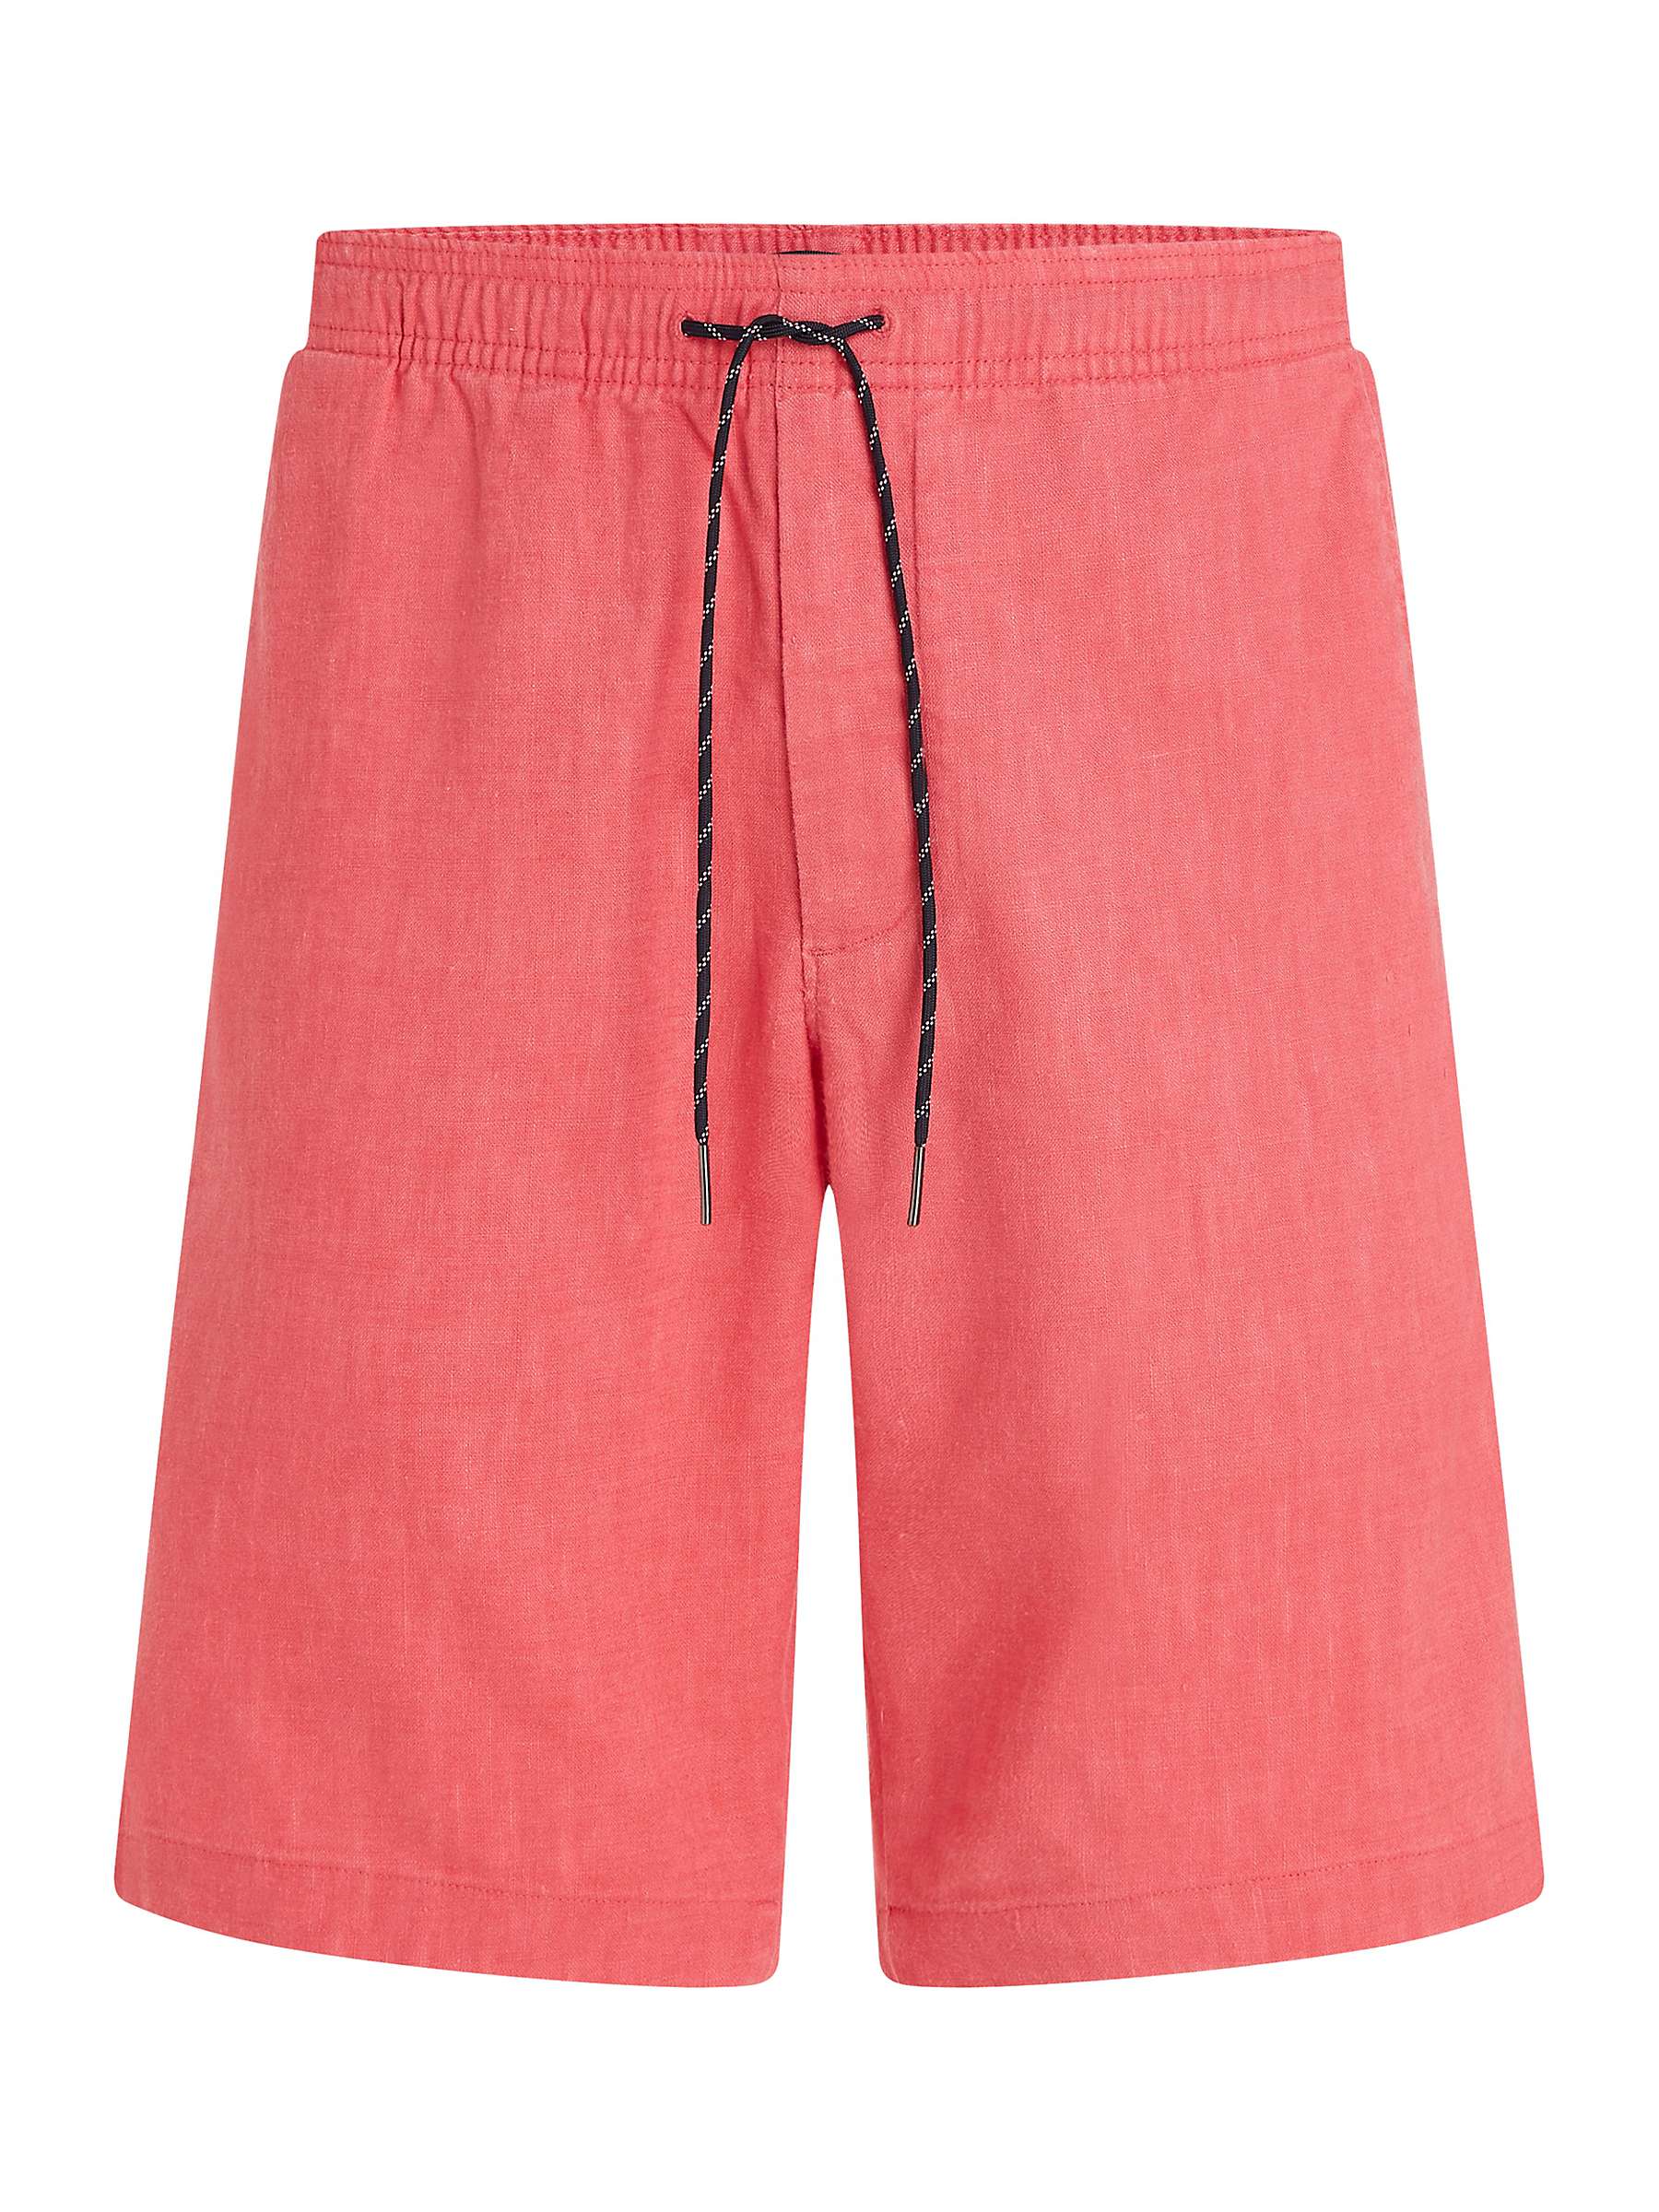 Buy Tommy Hilfiger Linen Shorts, Deep Crimson Fruit Online at johnlewis.com